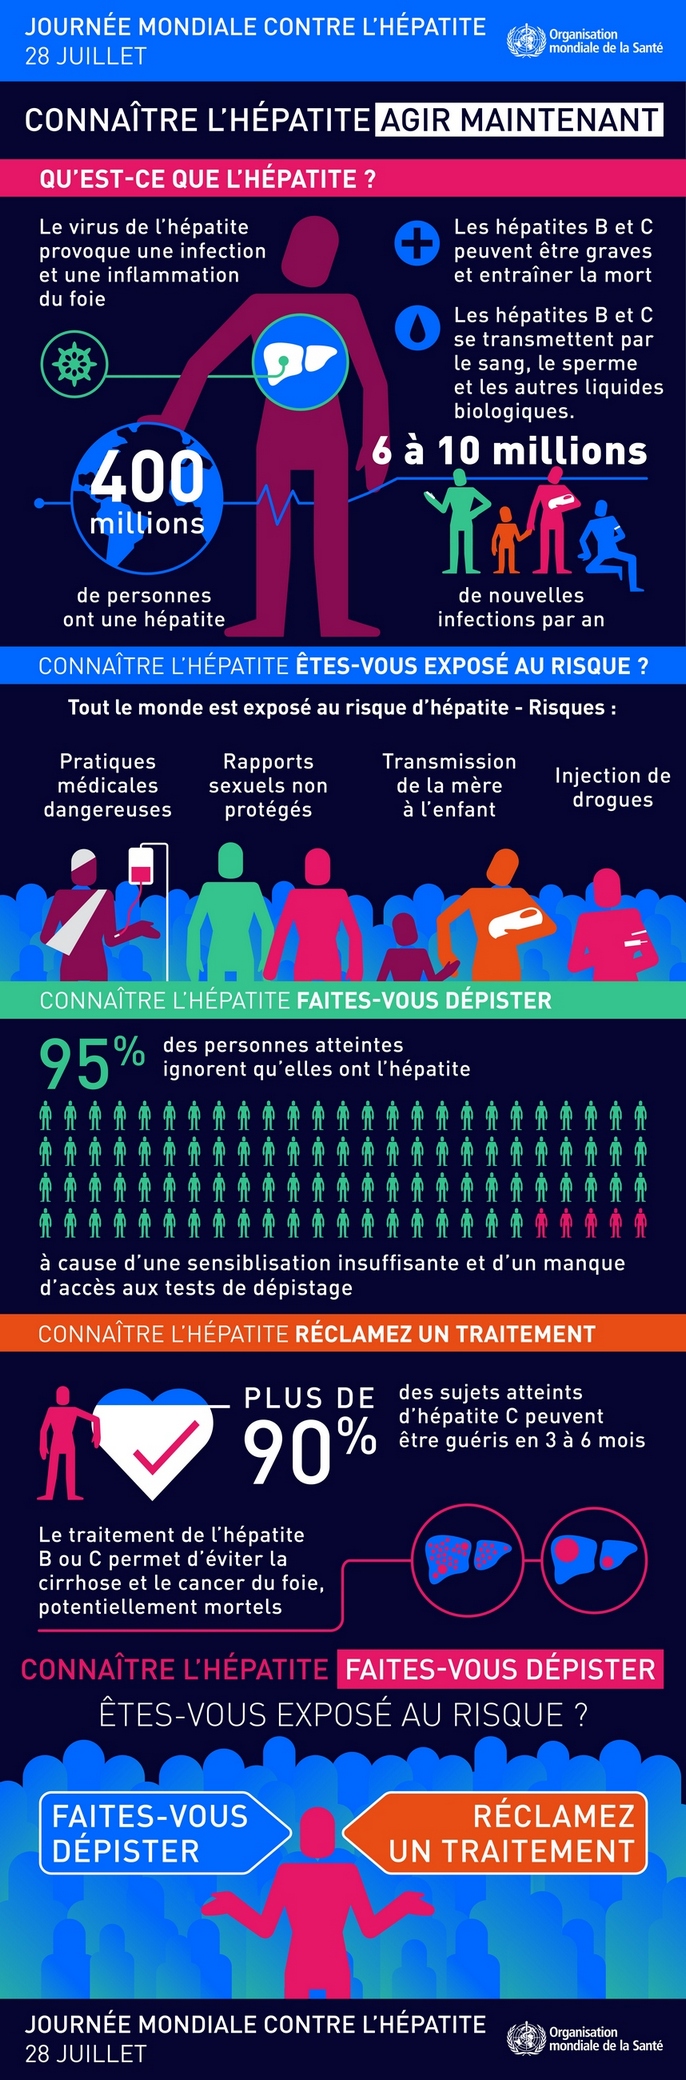 Journée mondiale contre l'hépatite, le 28 juillet 2016